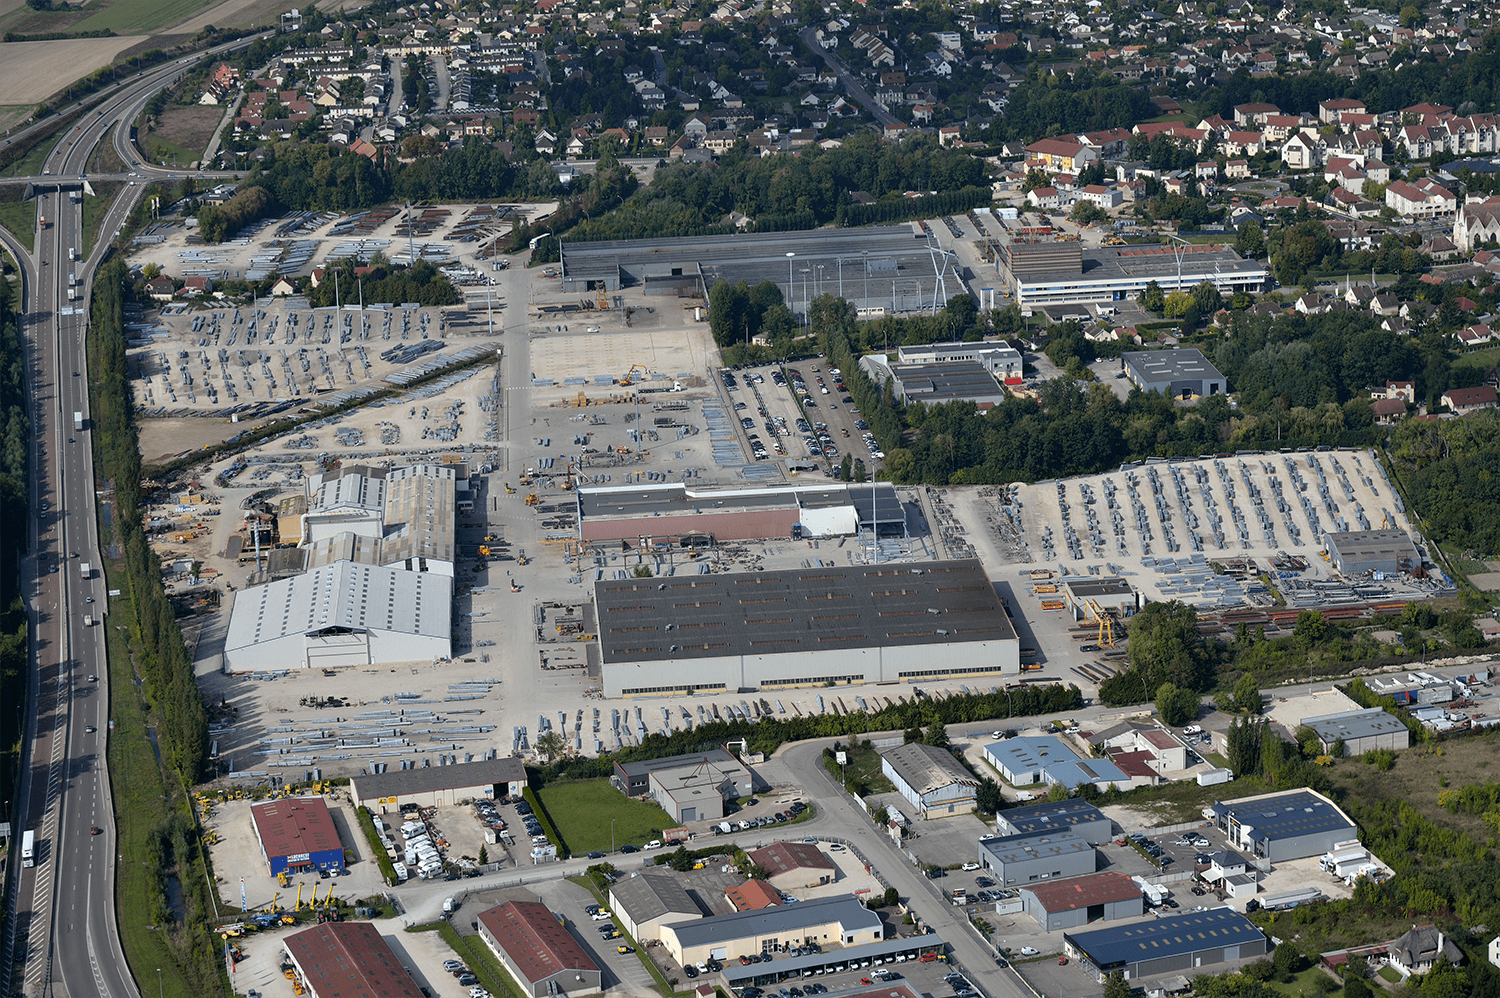 PETITJEAN se encuentra implantada cerca de Troyes, en Champagne, en una planta industrial de 30 hectáreas en la que se diseñan y fabrican íntegramente postes y farolas de todos los tamaños (vista aérea).